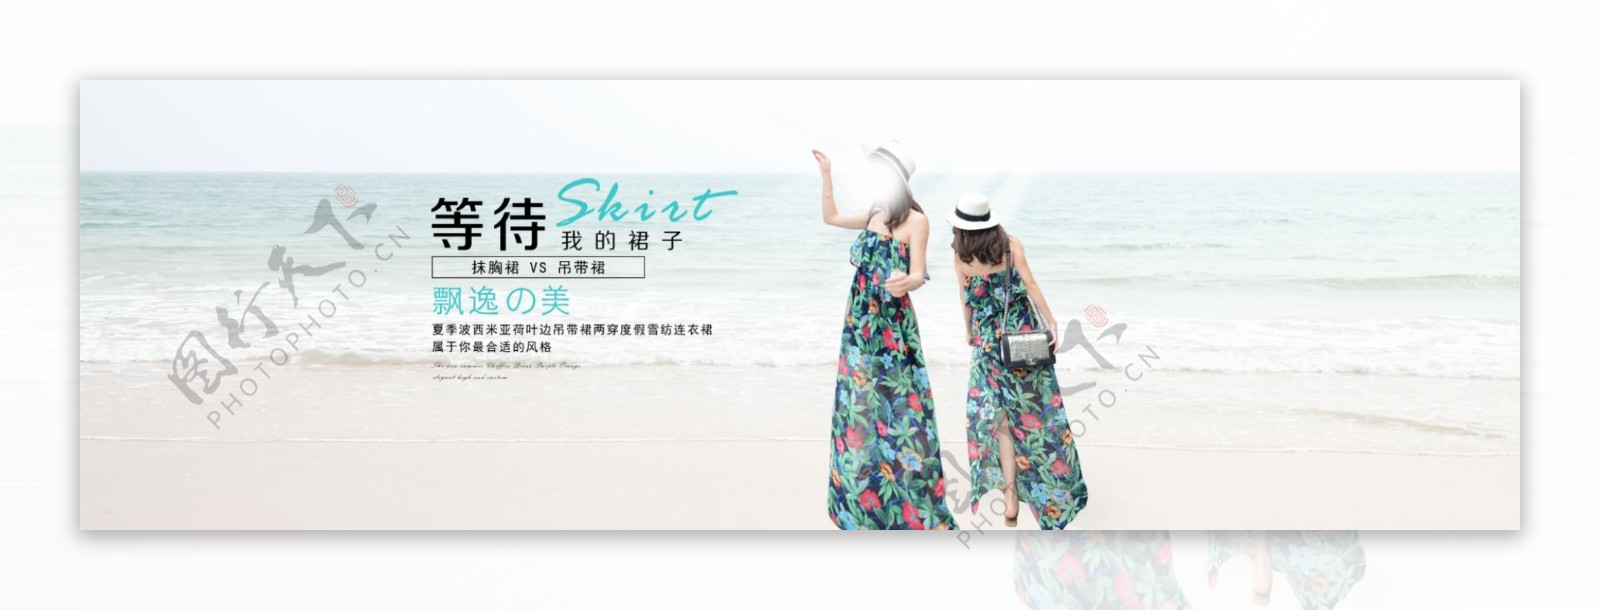 2015夏季新款沙滩长裙海报